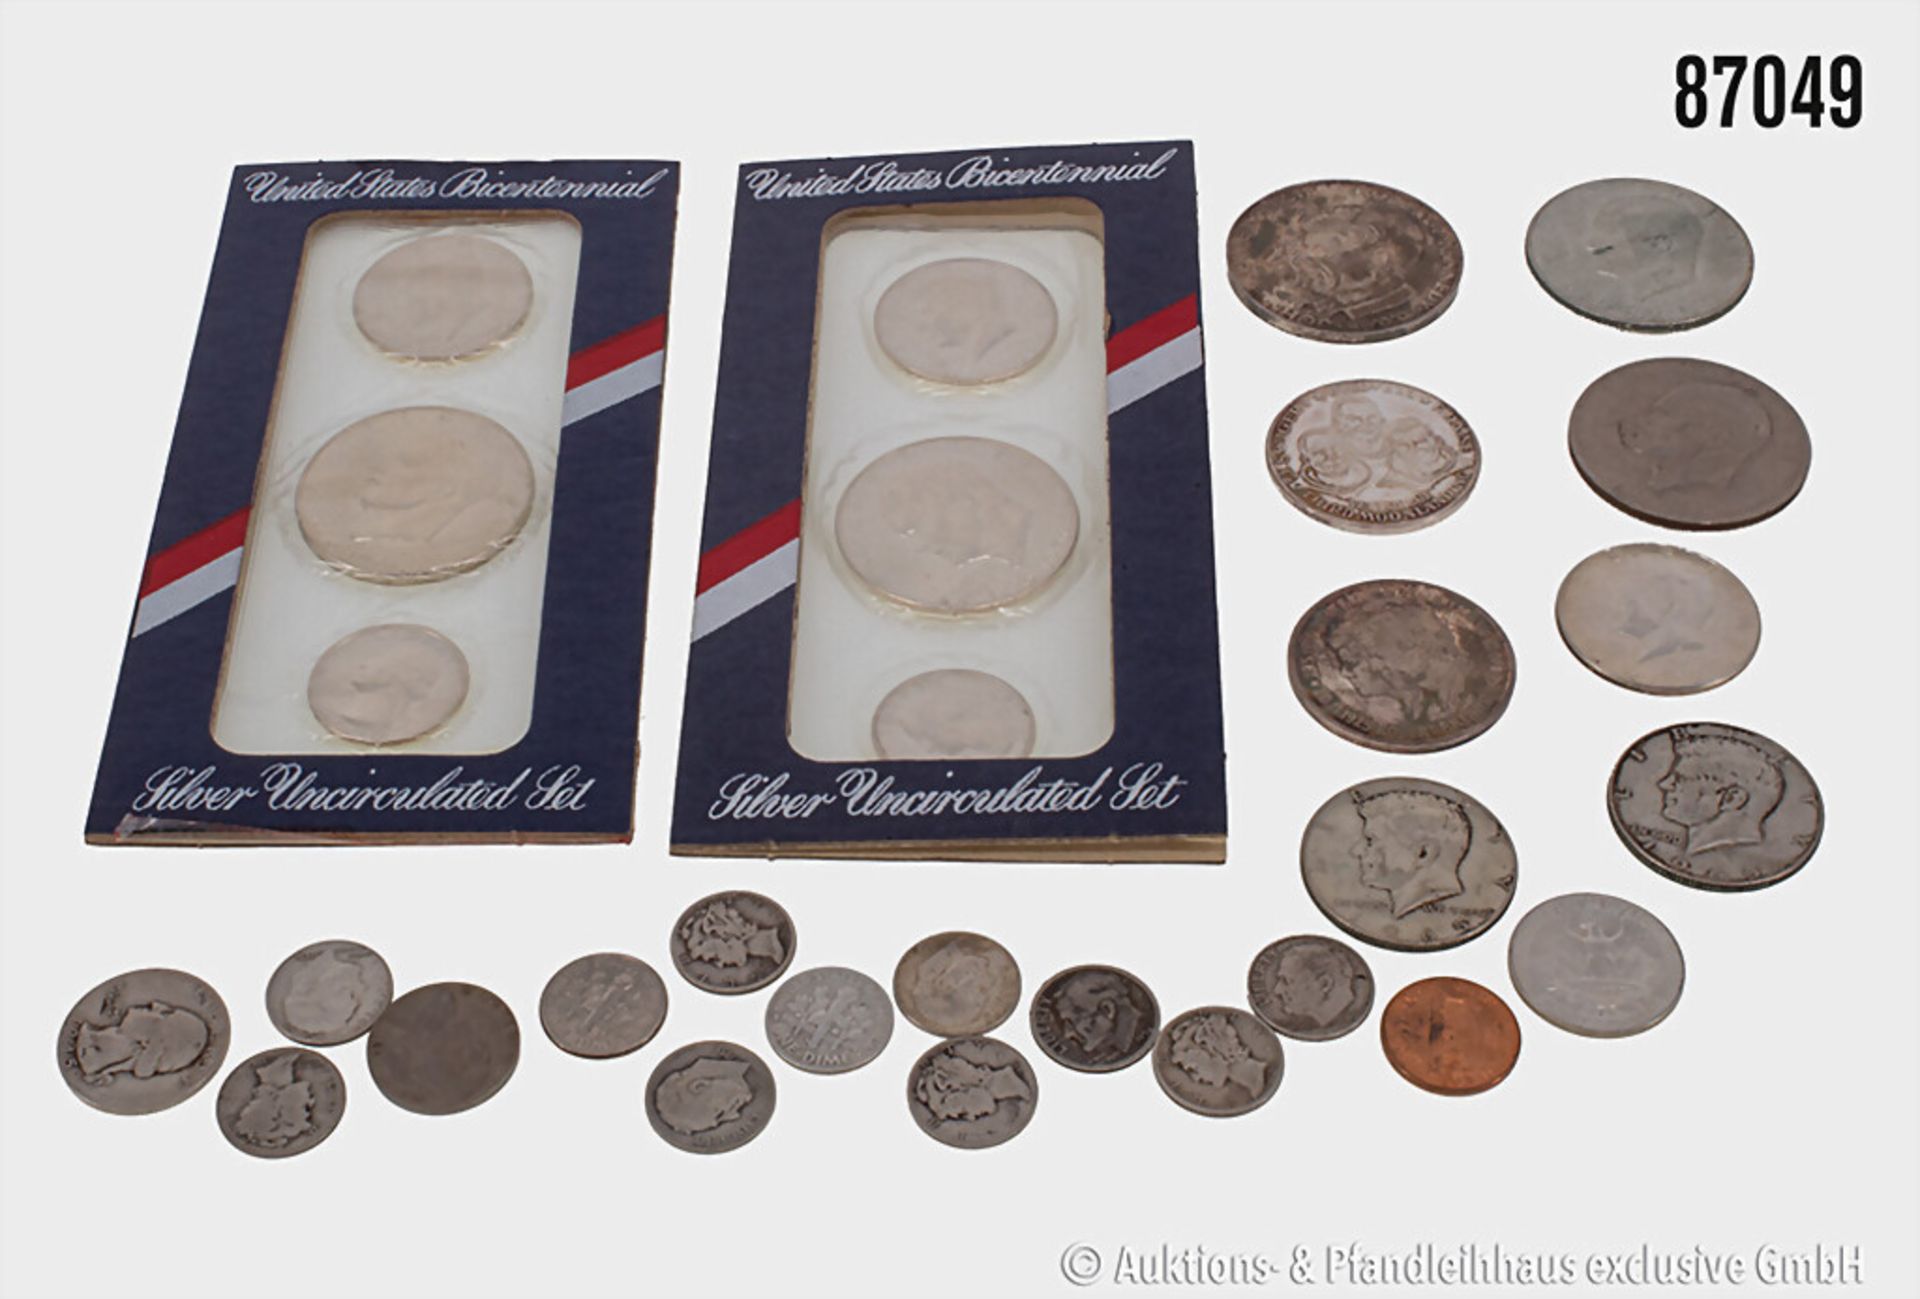 Konvolut USA überwiegend Silber Münzen, u.a. 2 Sets unzirkulierte Silbermünzen zu 25 ...